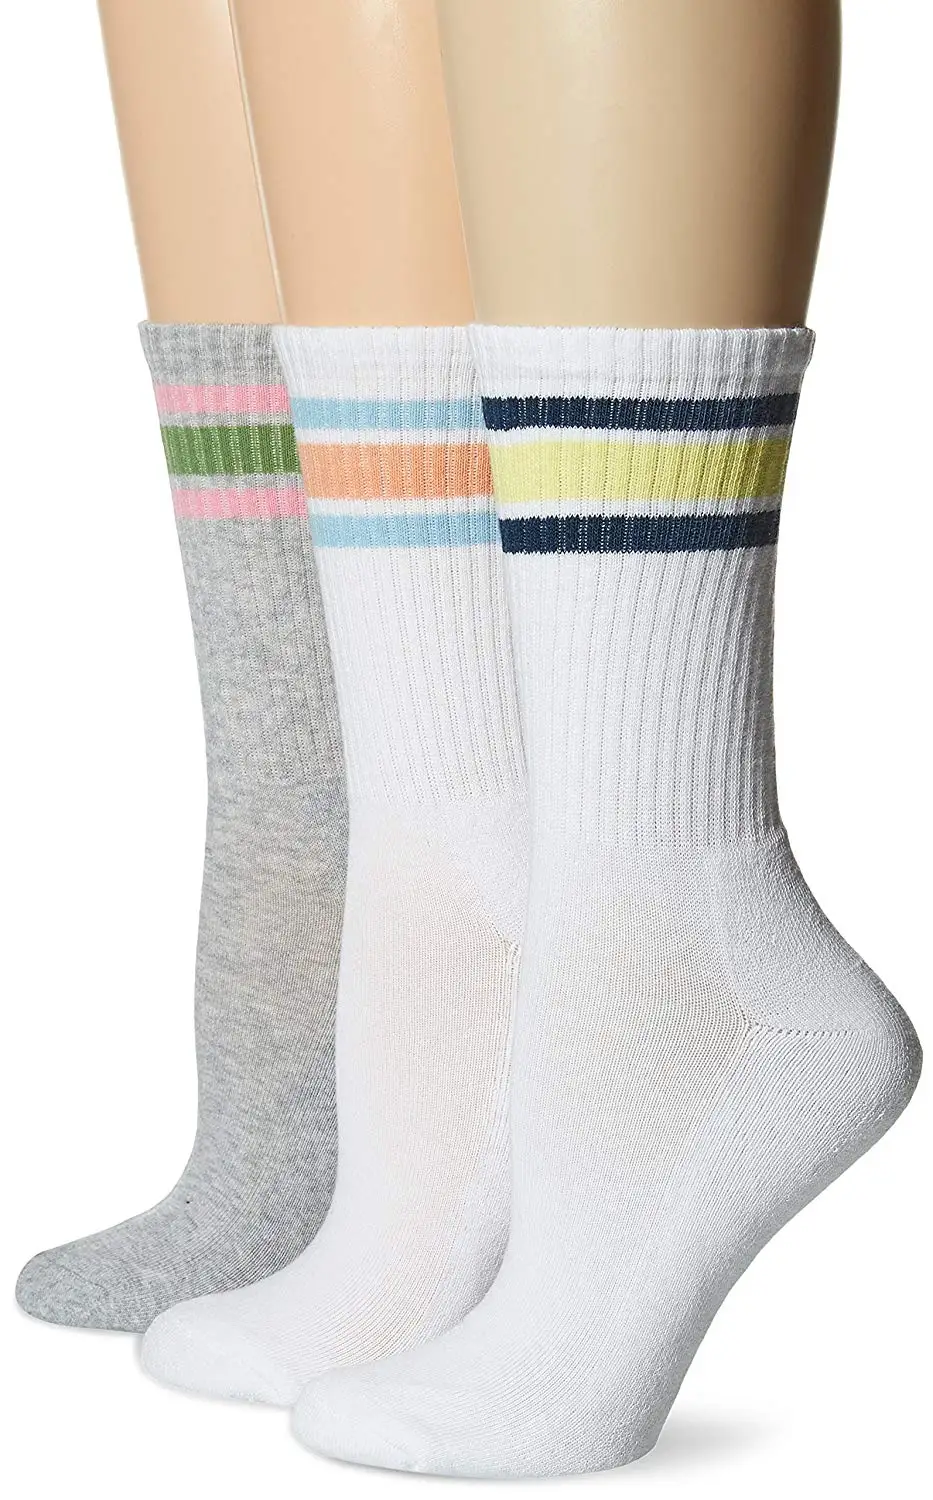 Cheap Keds Socks, find Keds Socks deals on line at Alibaba.com